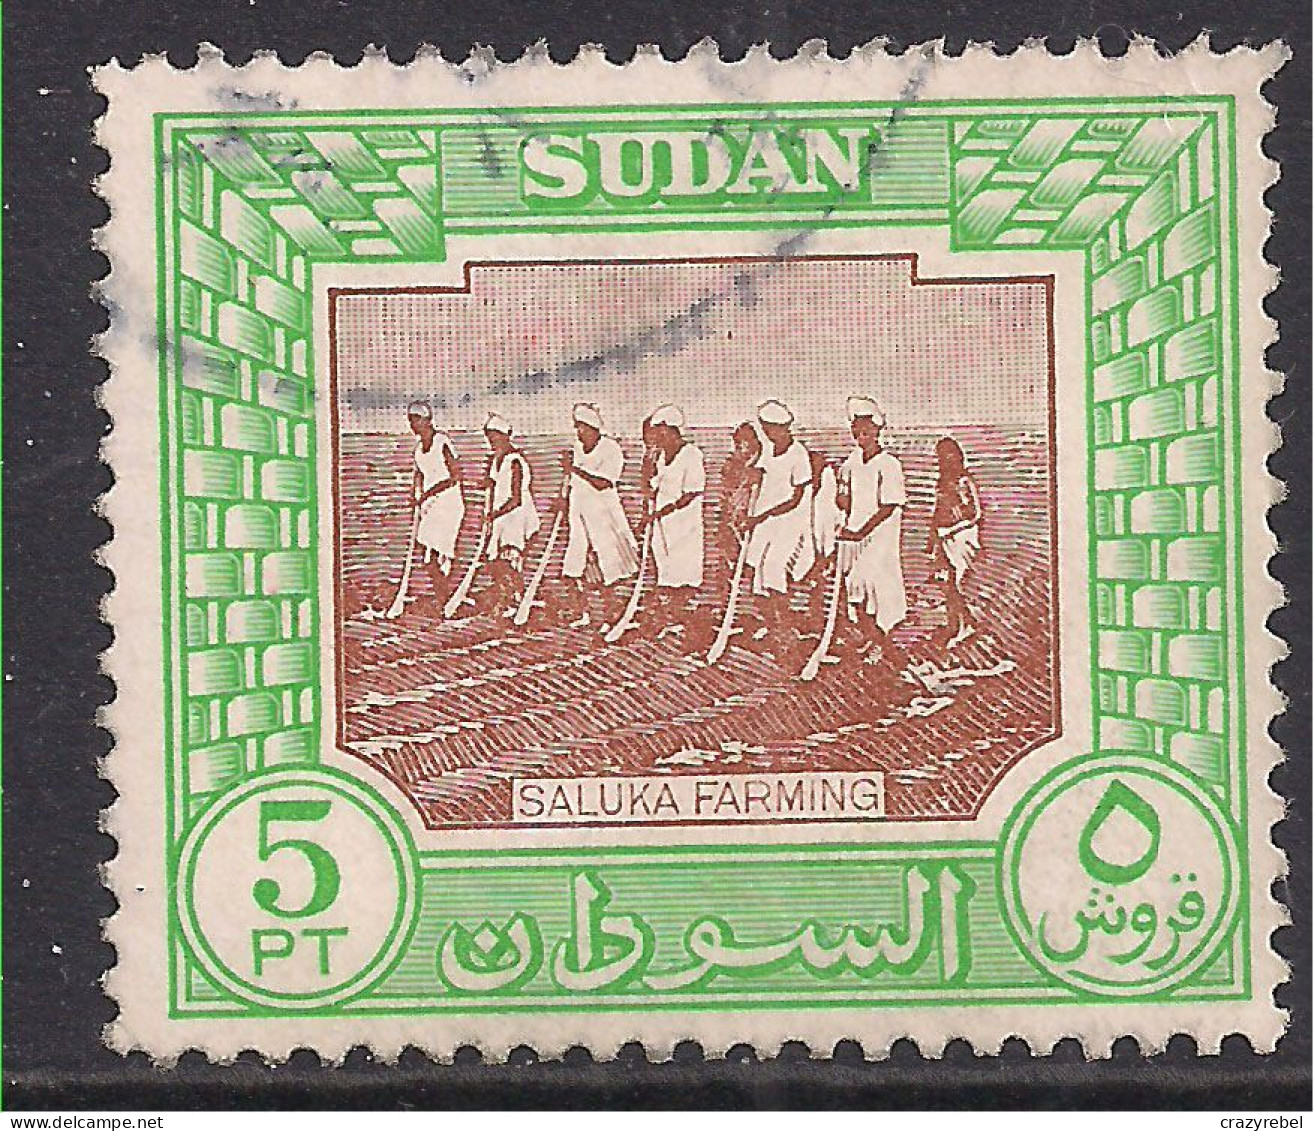 Sudan 1951 KGV1 5pt Saluka Farming Used SG 134 ( D328 ) - Soedan (...-1951)